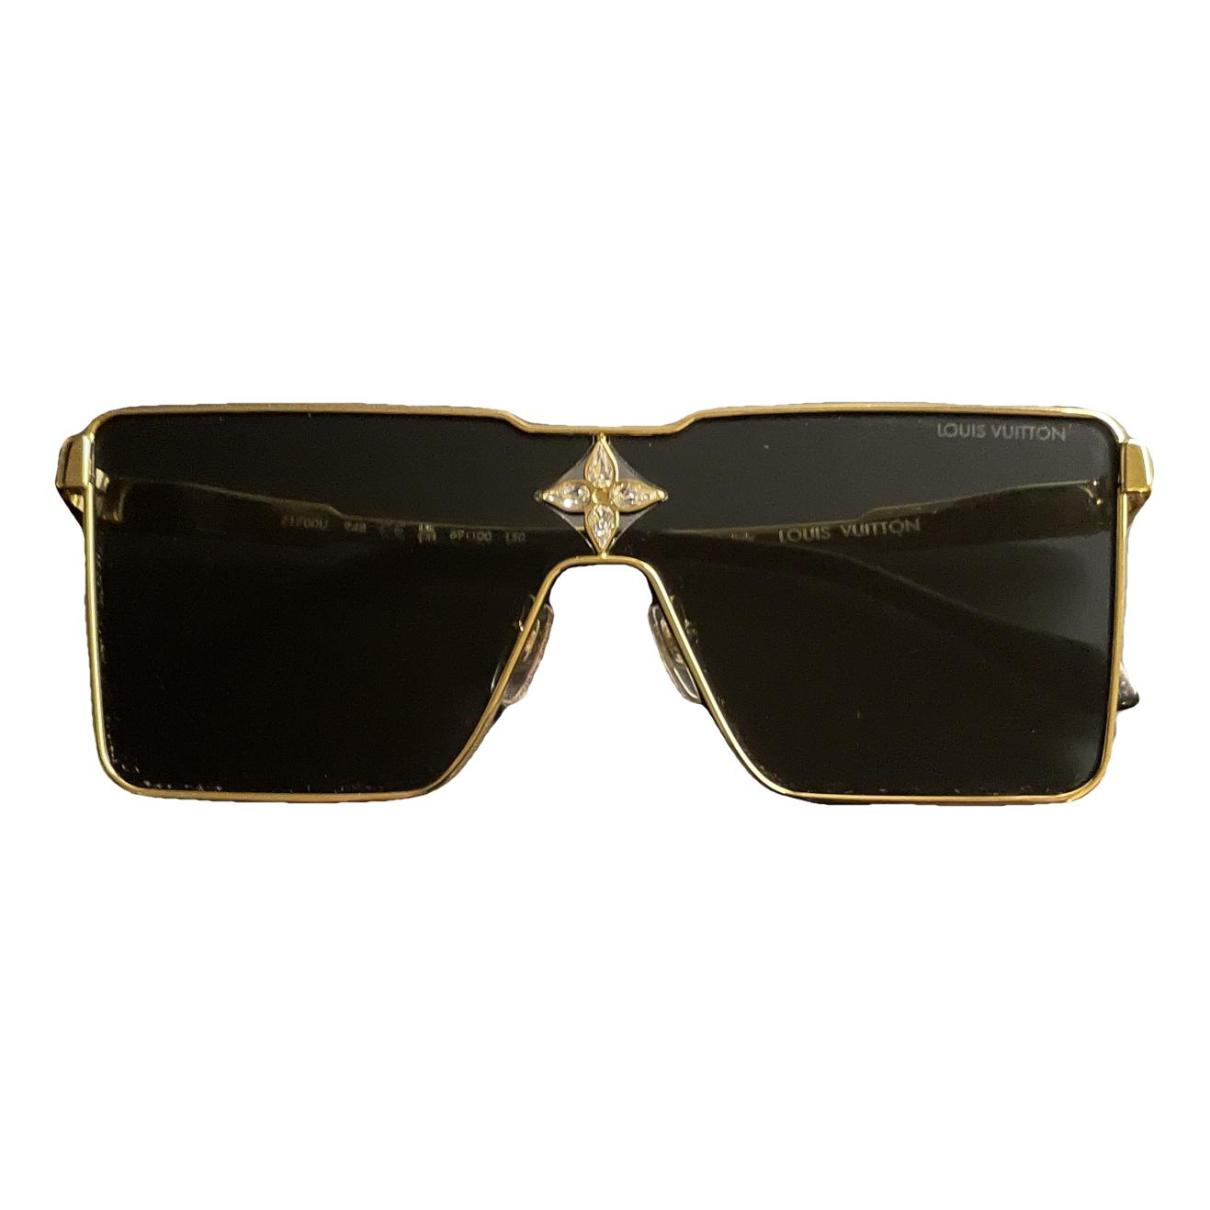 Sunglasses Louis Vuitton Black in Plastic - 23463294